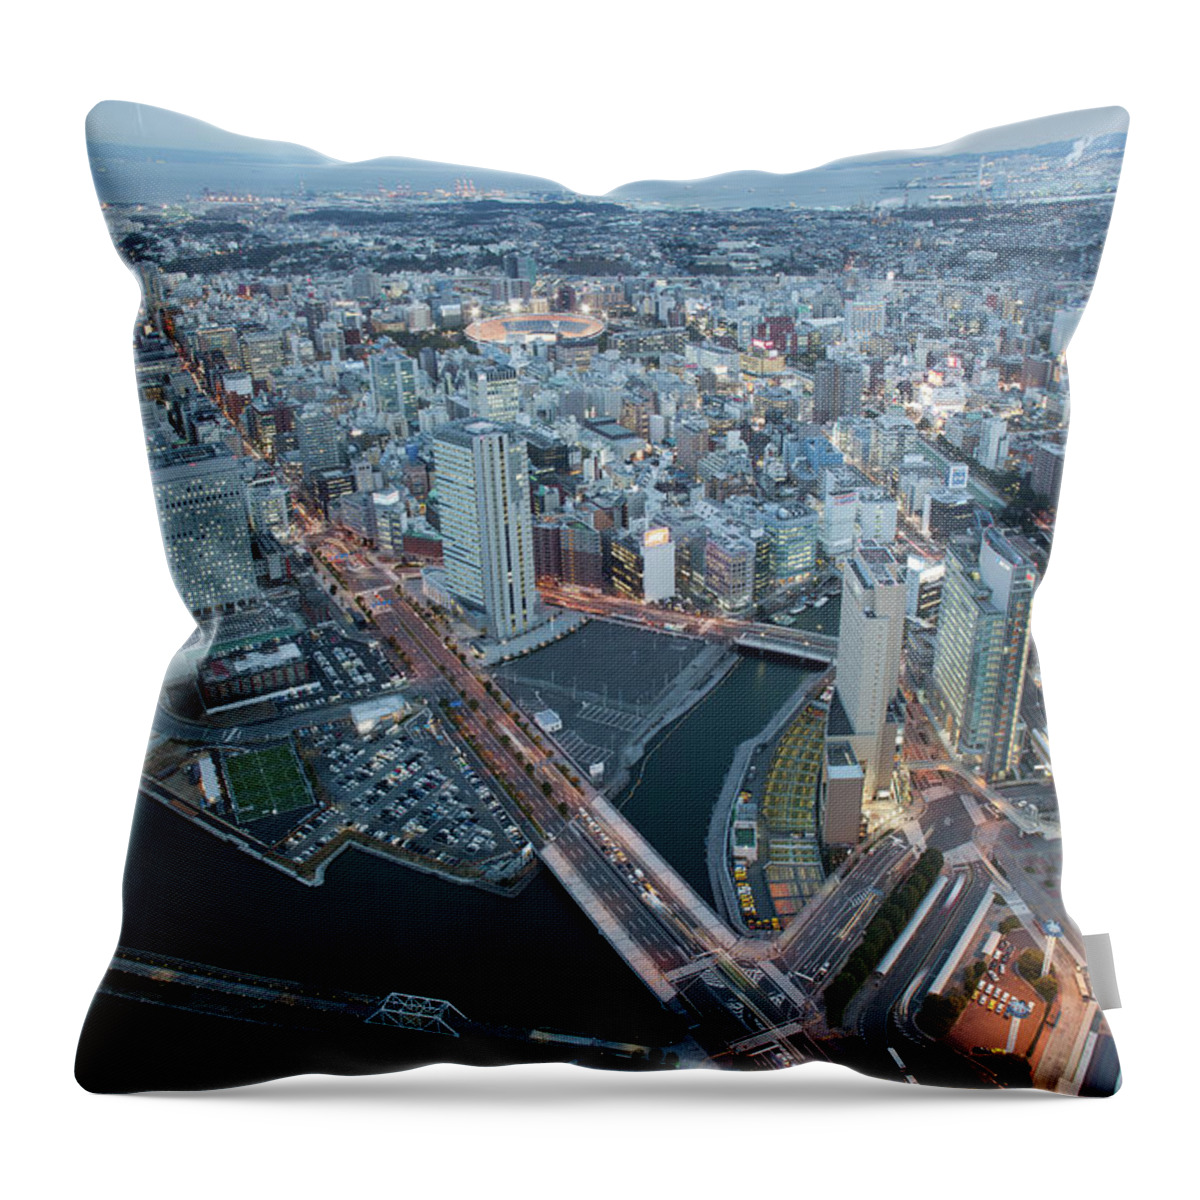 Yokohama Throw Pillow featuring the photograph View Of Yokohama by Alexey Kopytko